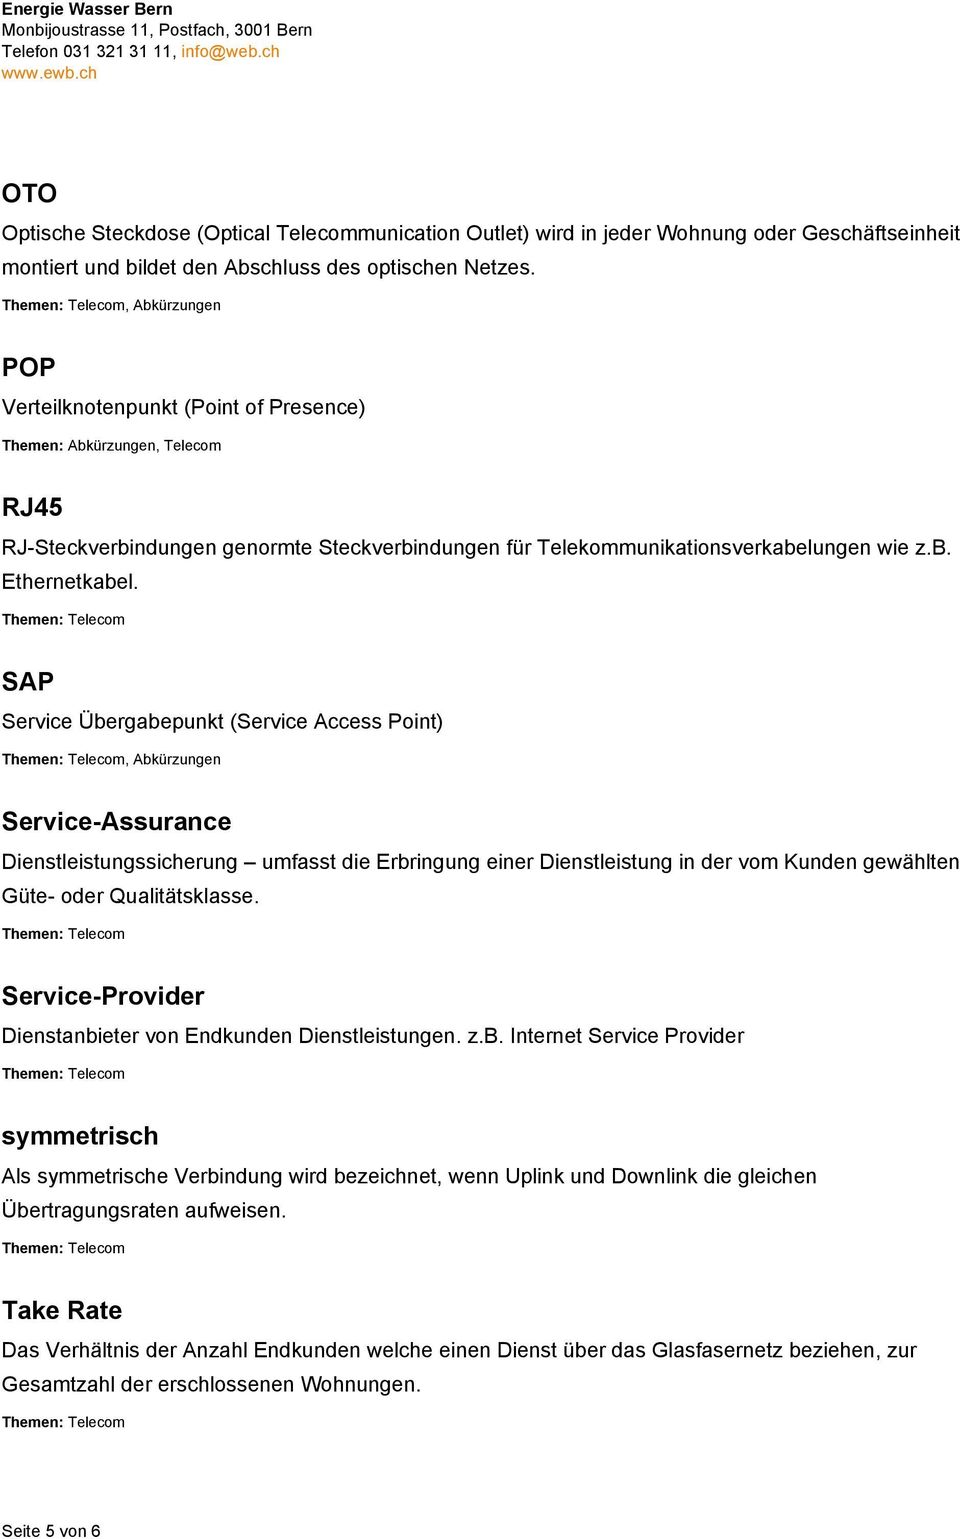 SAP Service Übergabepunkt (Service Access Point), Abkürzungen Service-Assurance Dienstleistungssicherung umfasst die Erbringung einer Dienstleistung in der vom Kunden gewählten Güte- oder